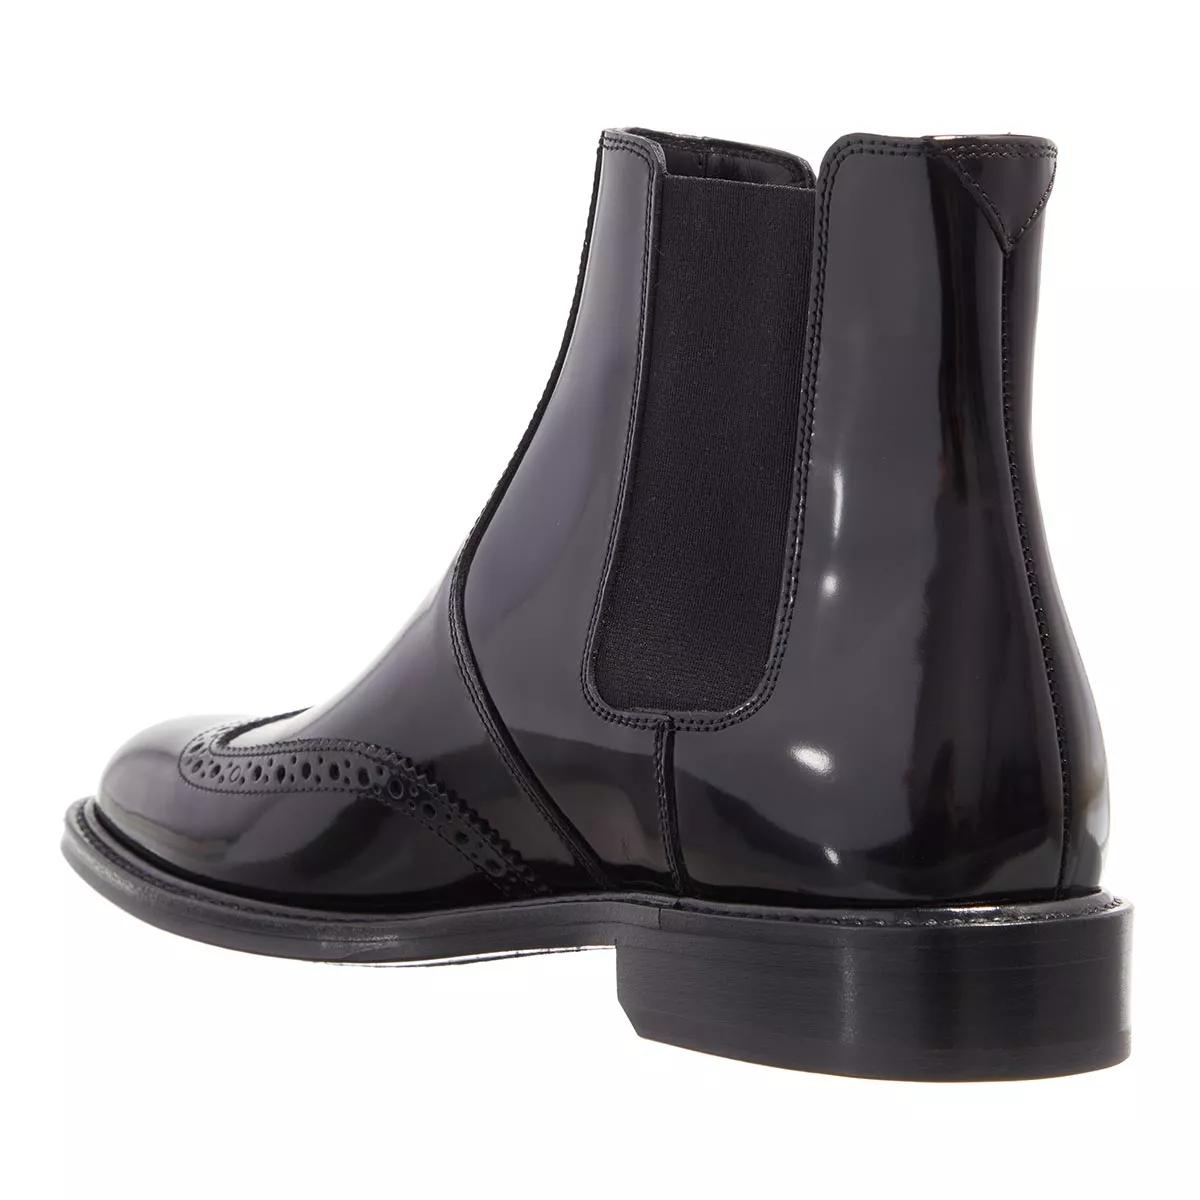 Saint Laurent Boots & Stiefeletten - Patent Leather Ankle Boots - Gr. 39 (EU) - in Schwarz - für Damen von Saint Laurent